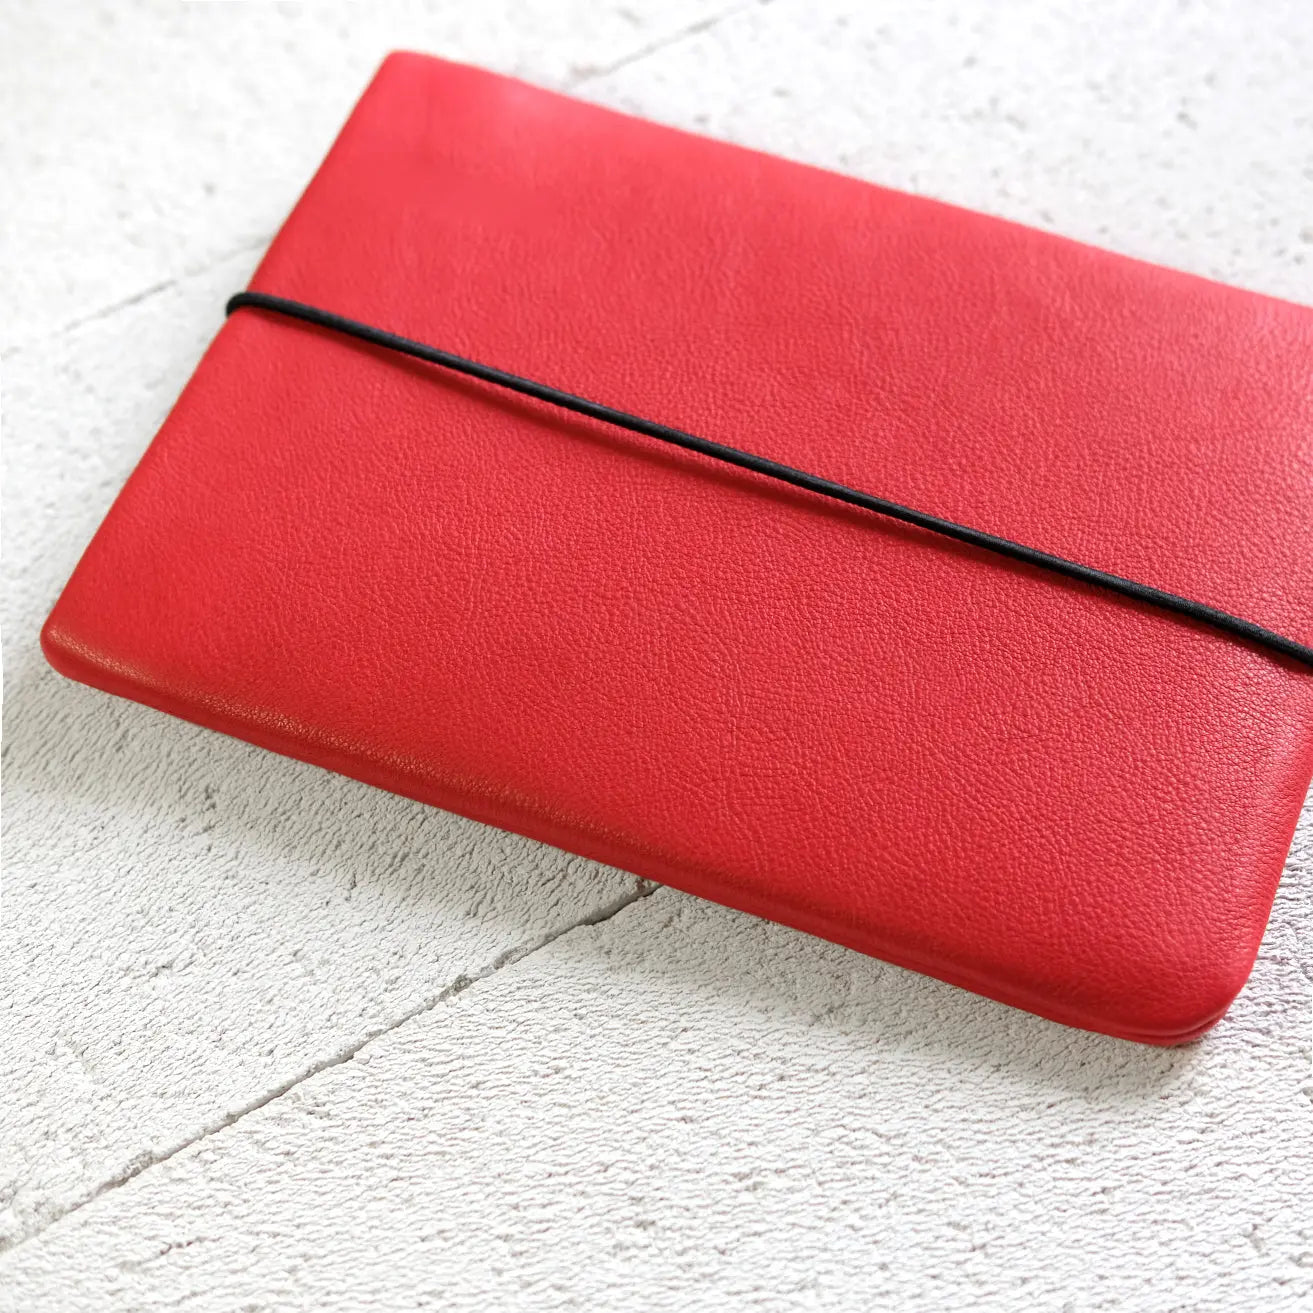 rote Notebook Hülle aus Leder liegt auf Steinboden